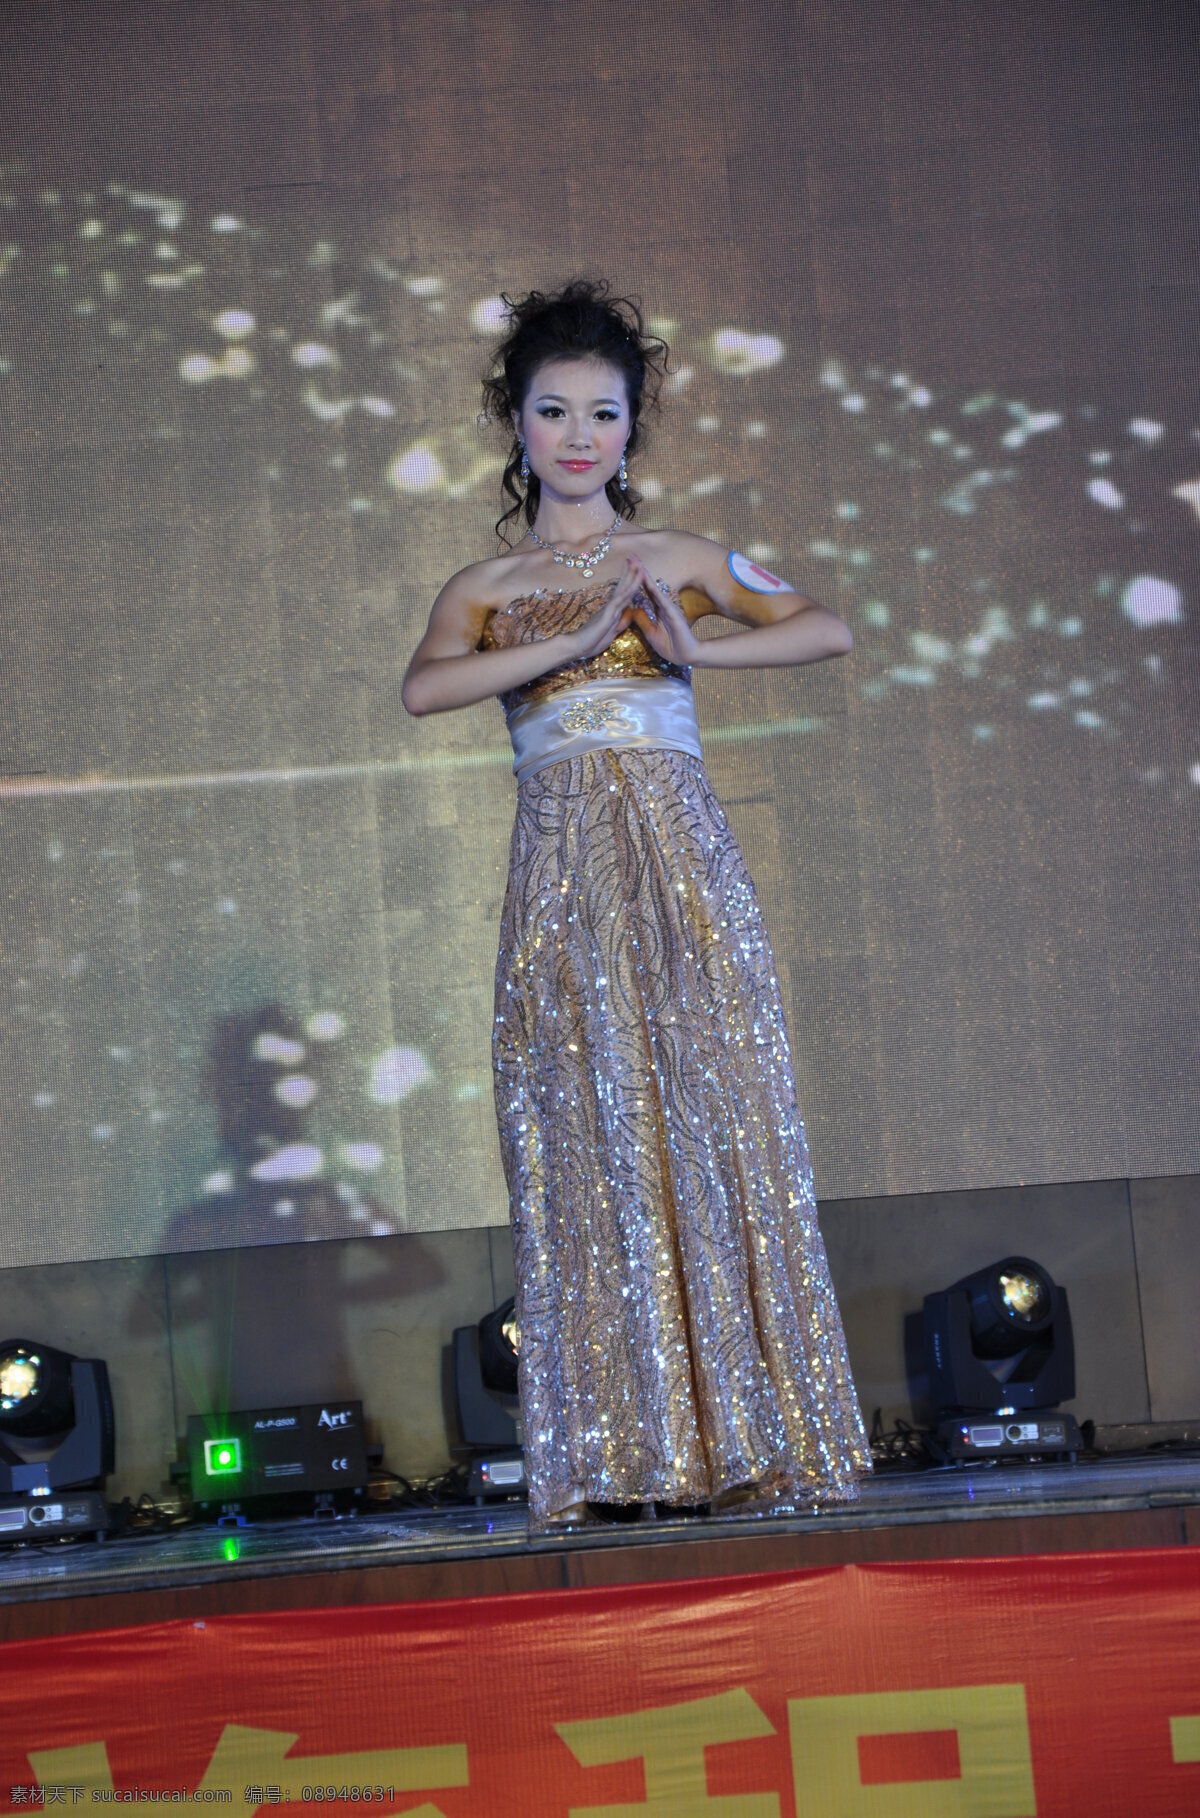 中国旅游 小姐 总决赛 美女 舞蹈 旅游小姐 模特 服饰 服装 形象大使 女孩 女性女人 人物图库